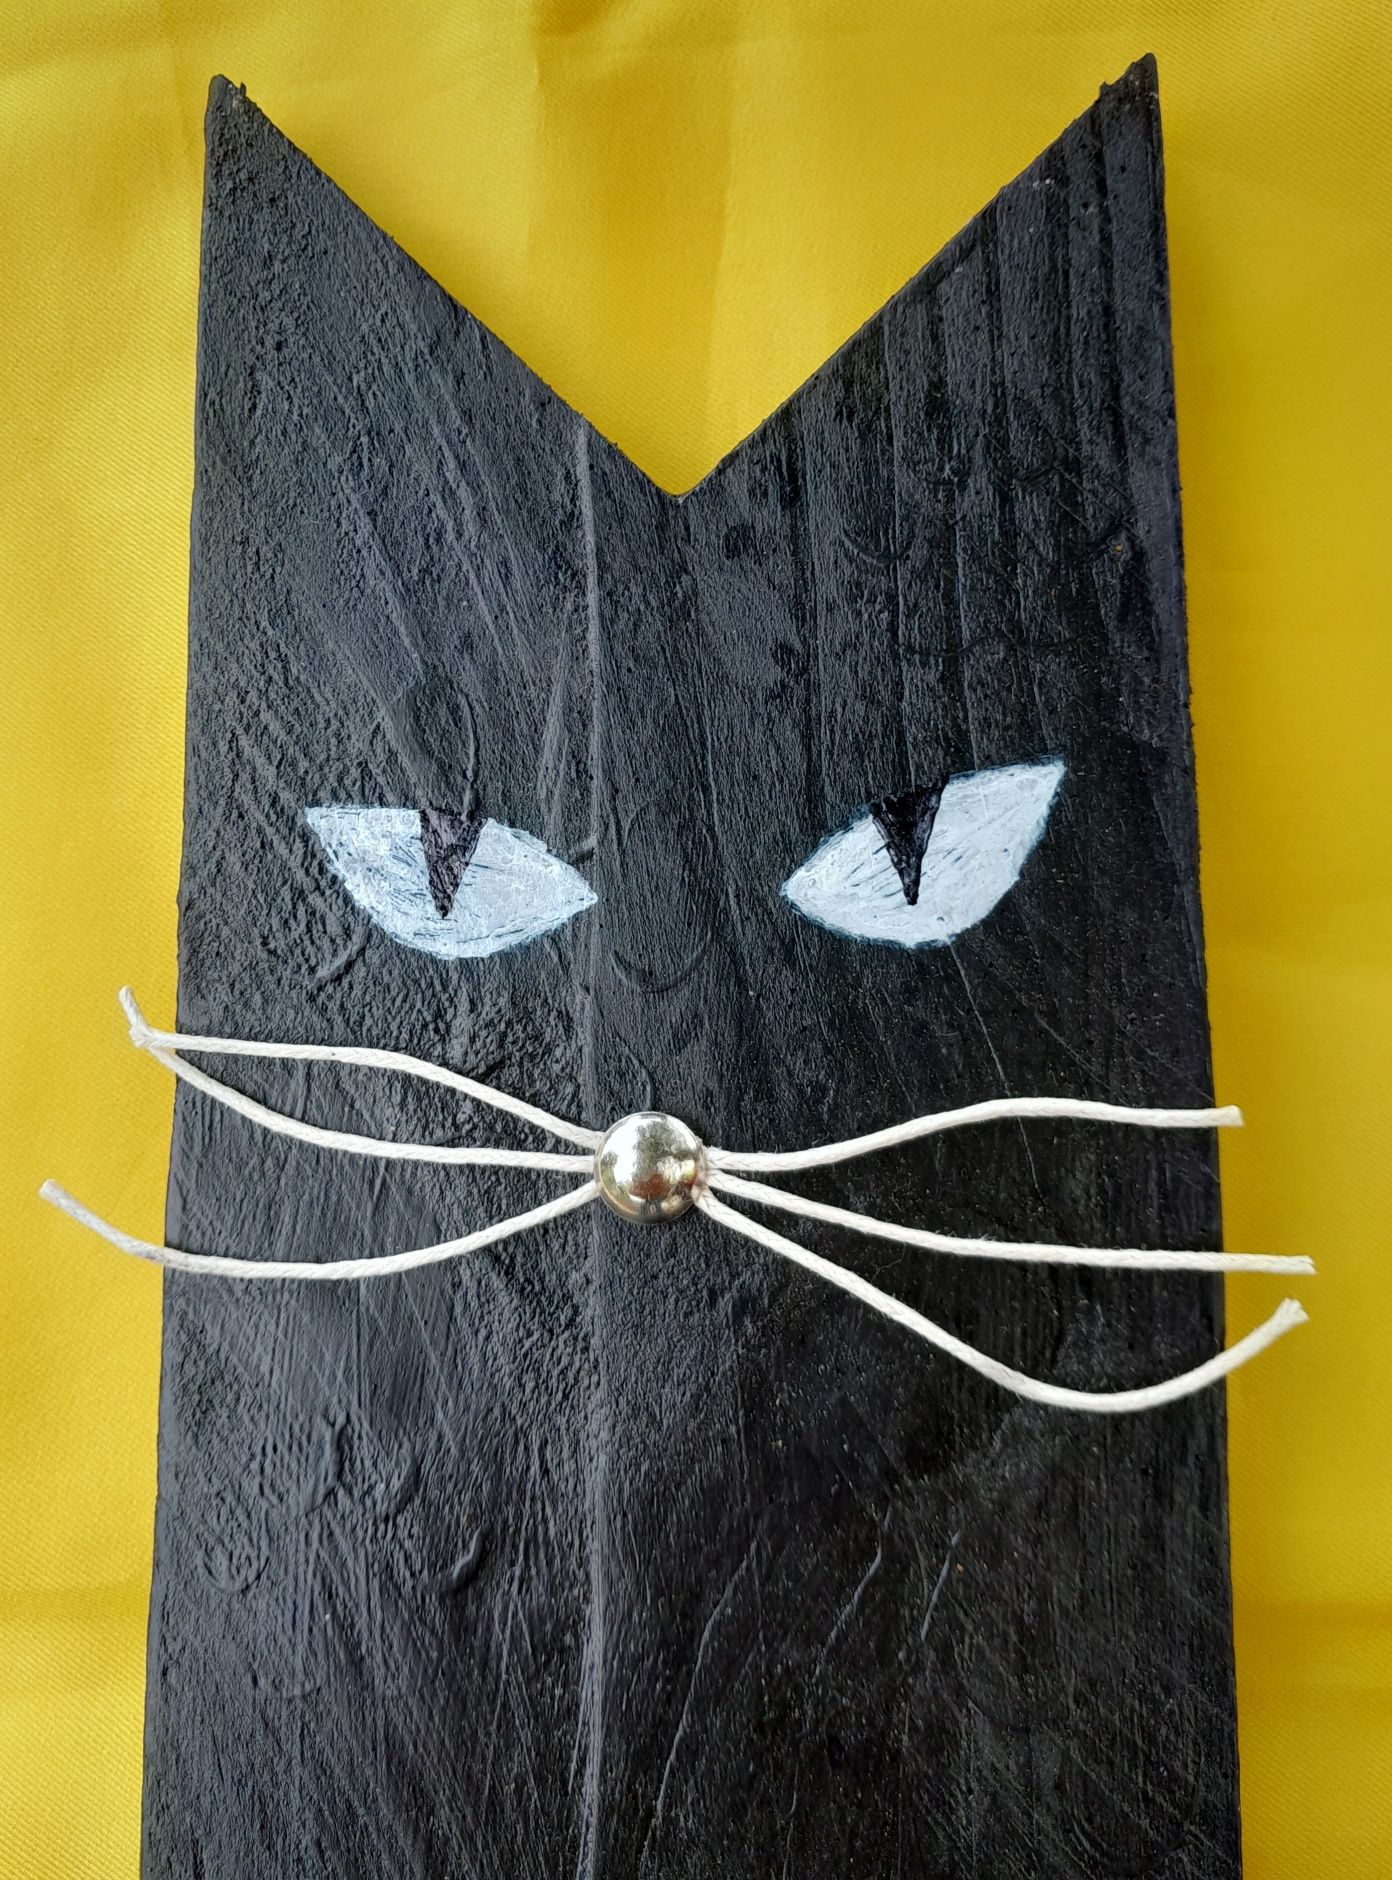 Cabide artesanal em madeira formato gato